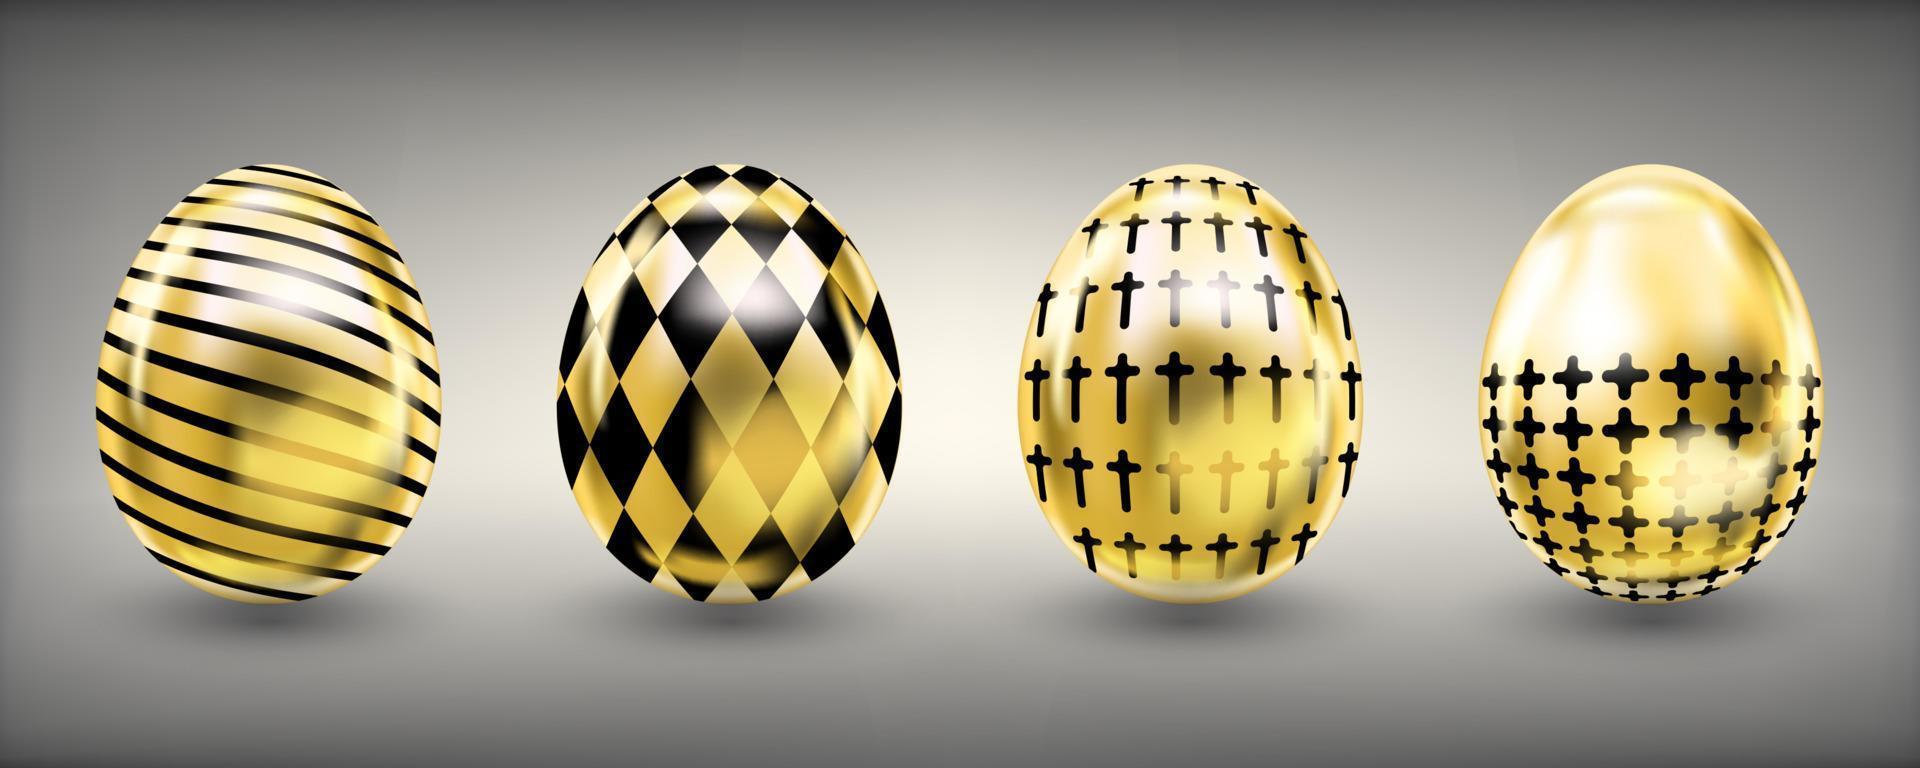 Pasen glanzende blik gouden eieren met zwarte kruisen en kruimels vector